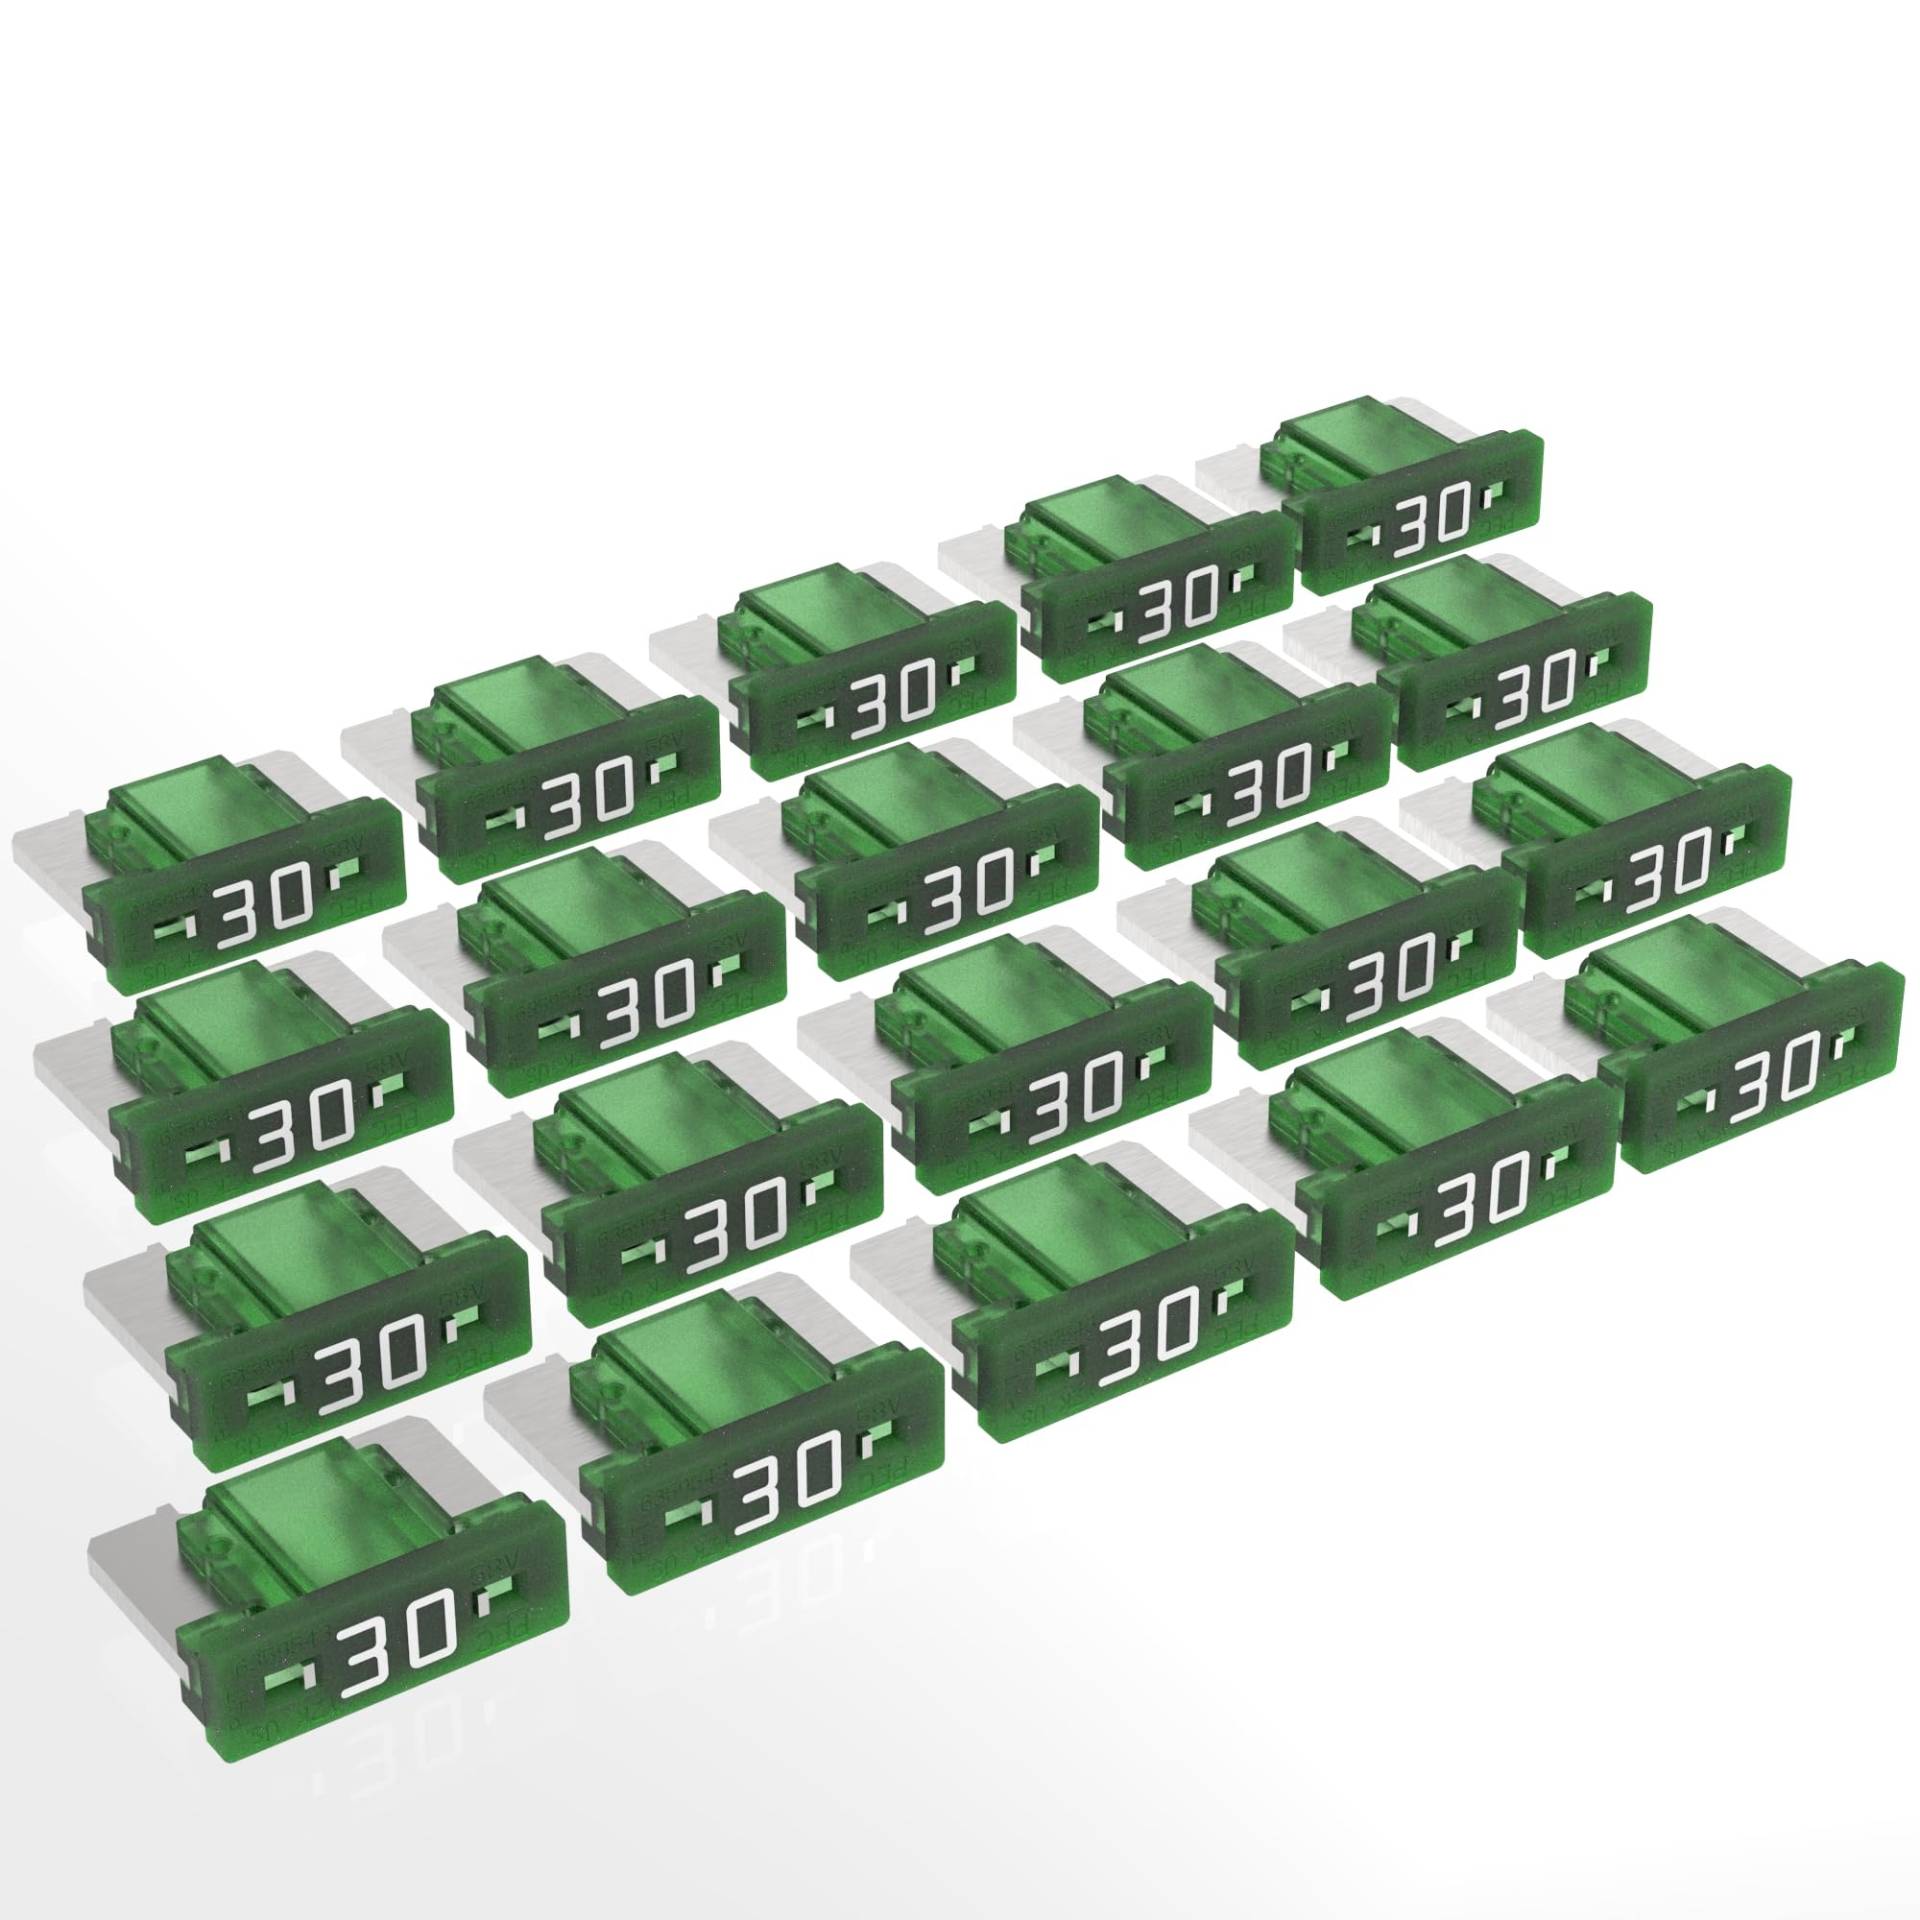 AUPROTEC Mini LP Kfz Sicherungen Flachstecksicherungen 2A - 30A Auswahl: 30A Ampere grün, 20 Stück von AUPROTEC